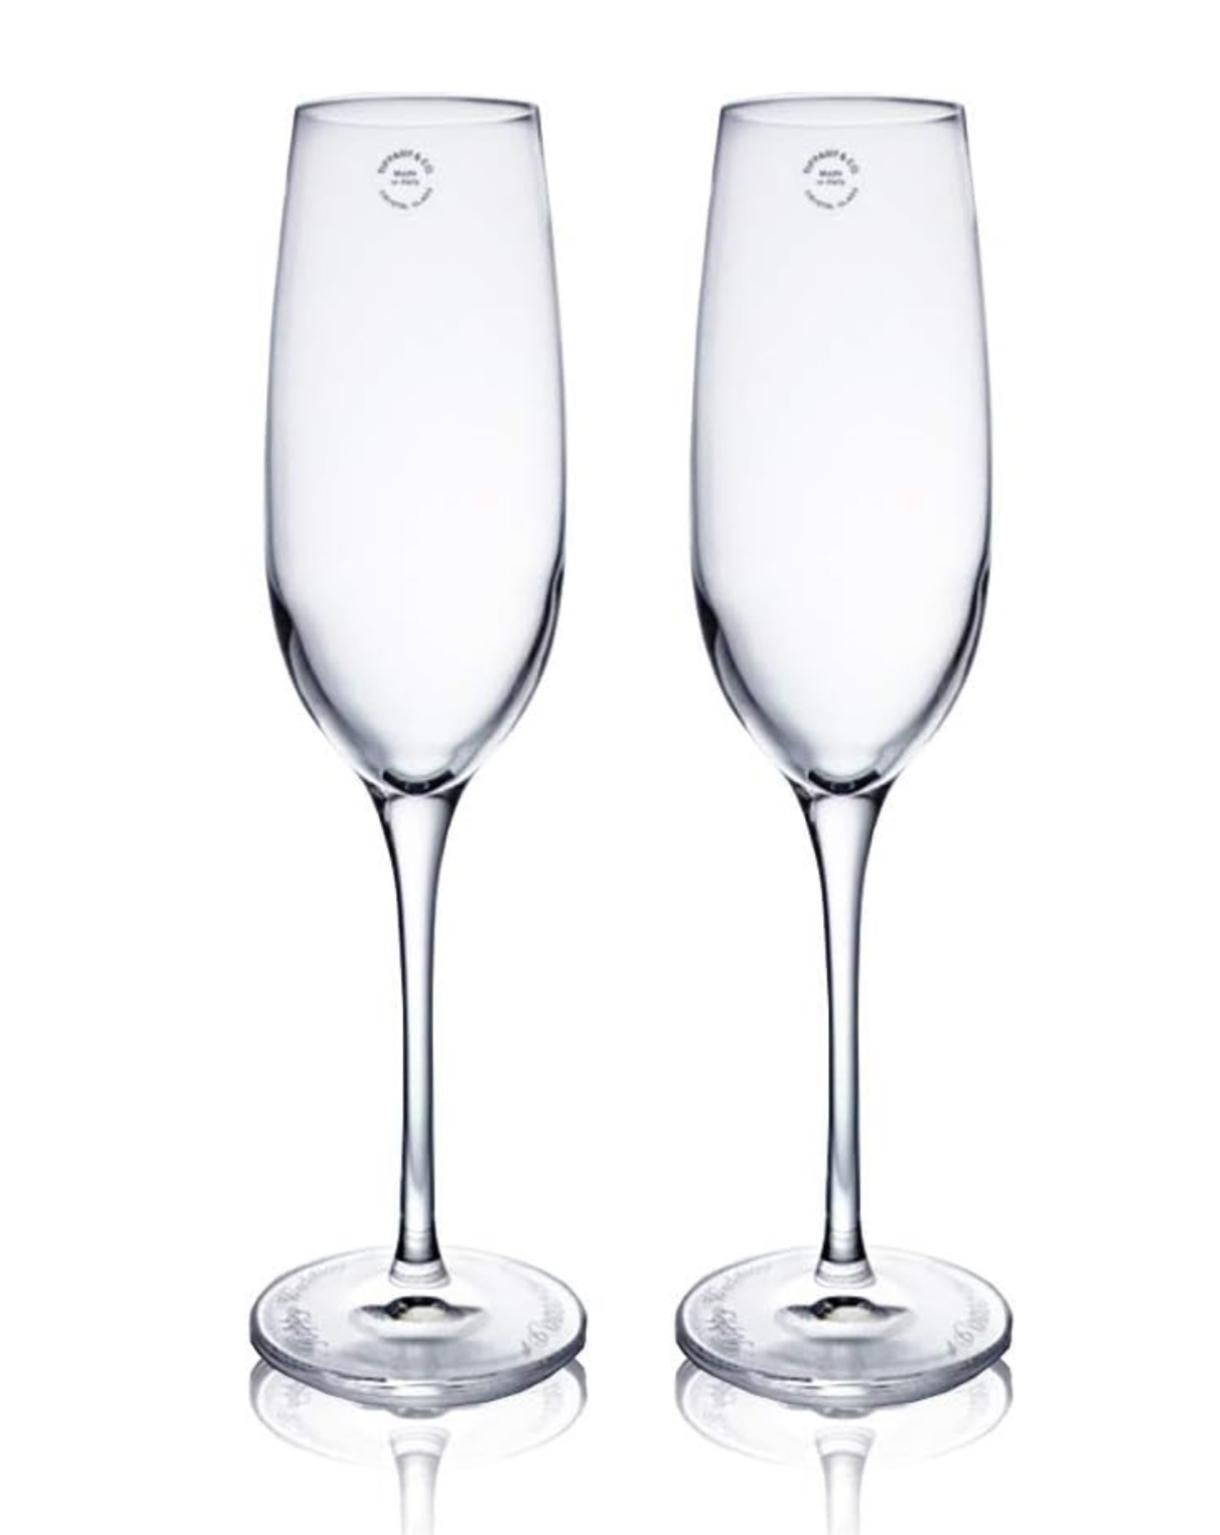 Heben Sie Ihren nächsten Trinkspruch mit diesen Vintage-Champagnerflöten von Tiffany & Co. aus hochwertigem Kristall hervor.  Das klare Glasdesign lässt die Blasen durchscheinen und sorgt so für einen schönen optischen Effekt.  Sie werden in einer